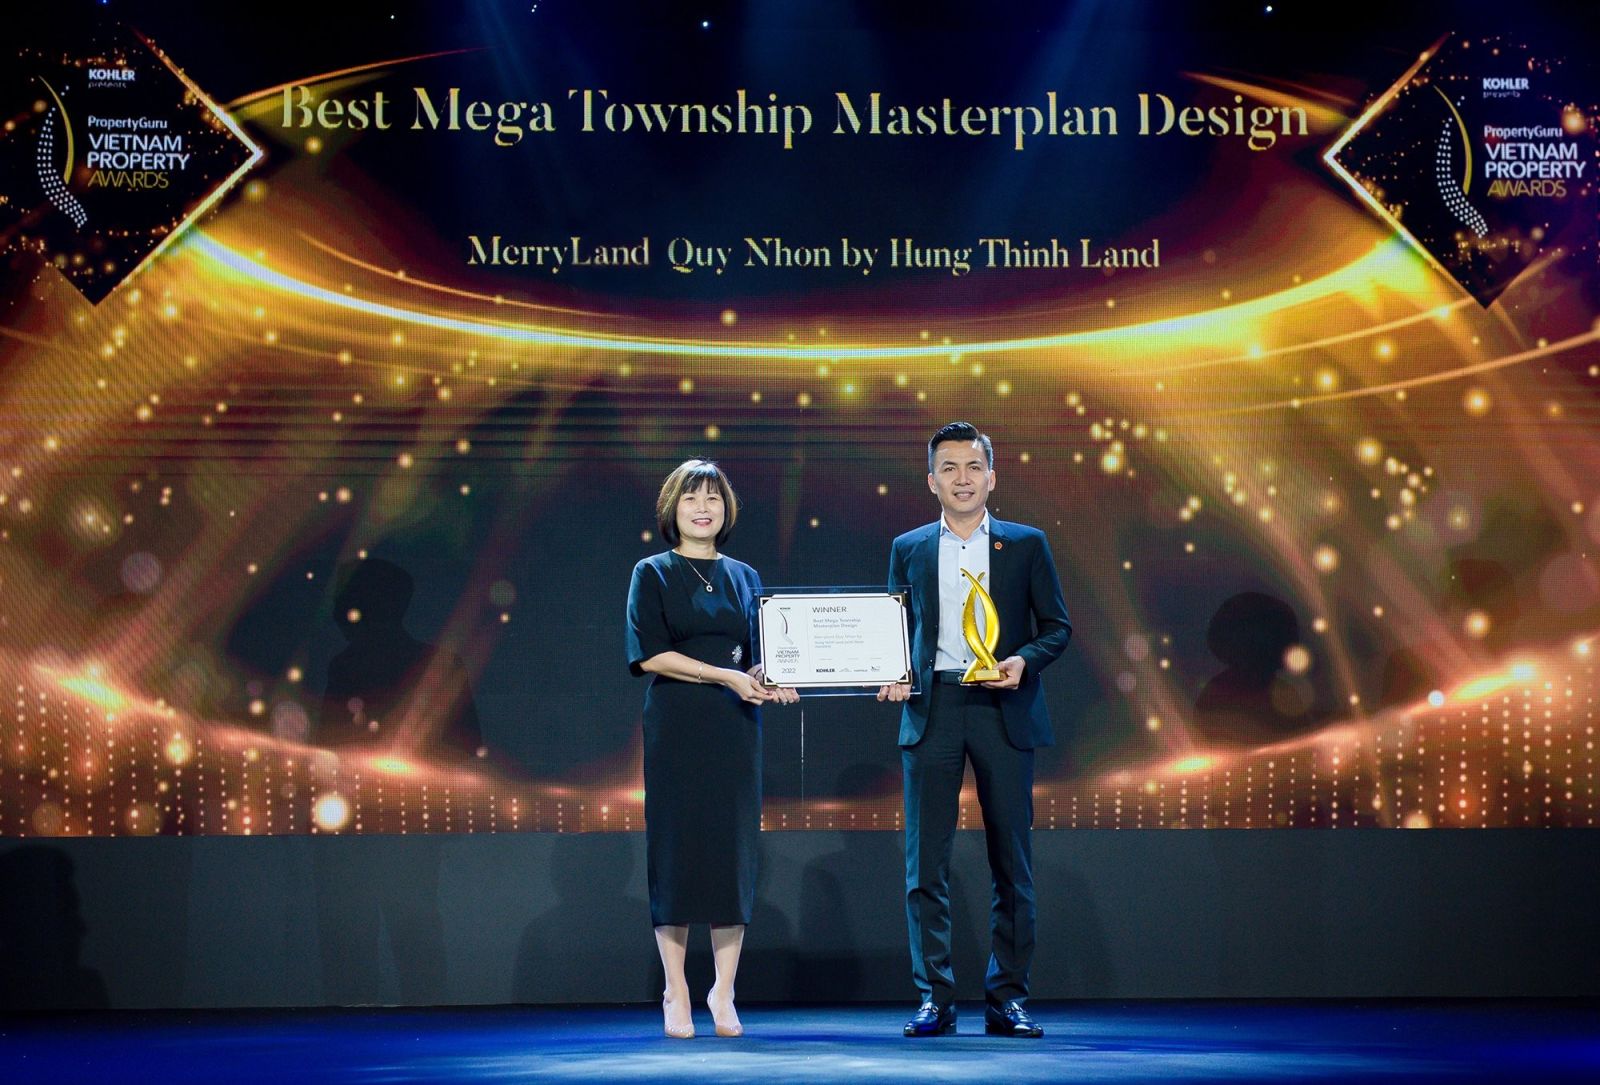 Dự án MerryLand Quy Nhơn được trao giải ở hạng mục danh giá